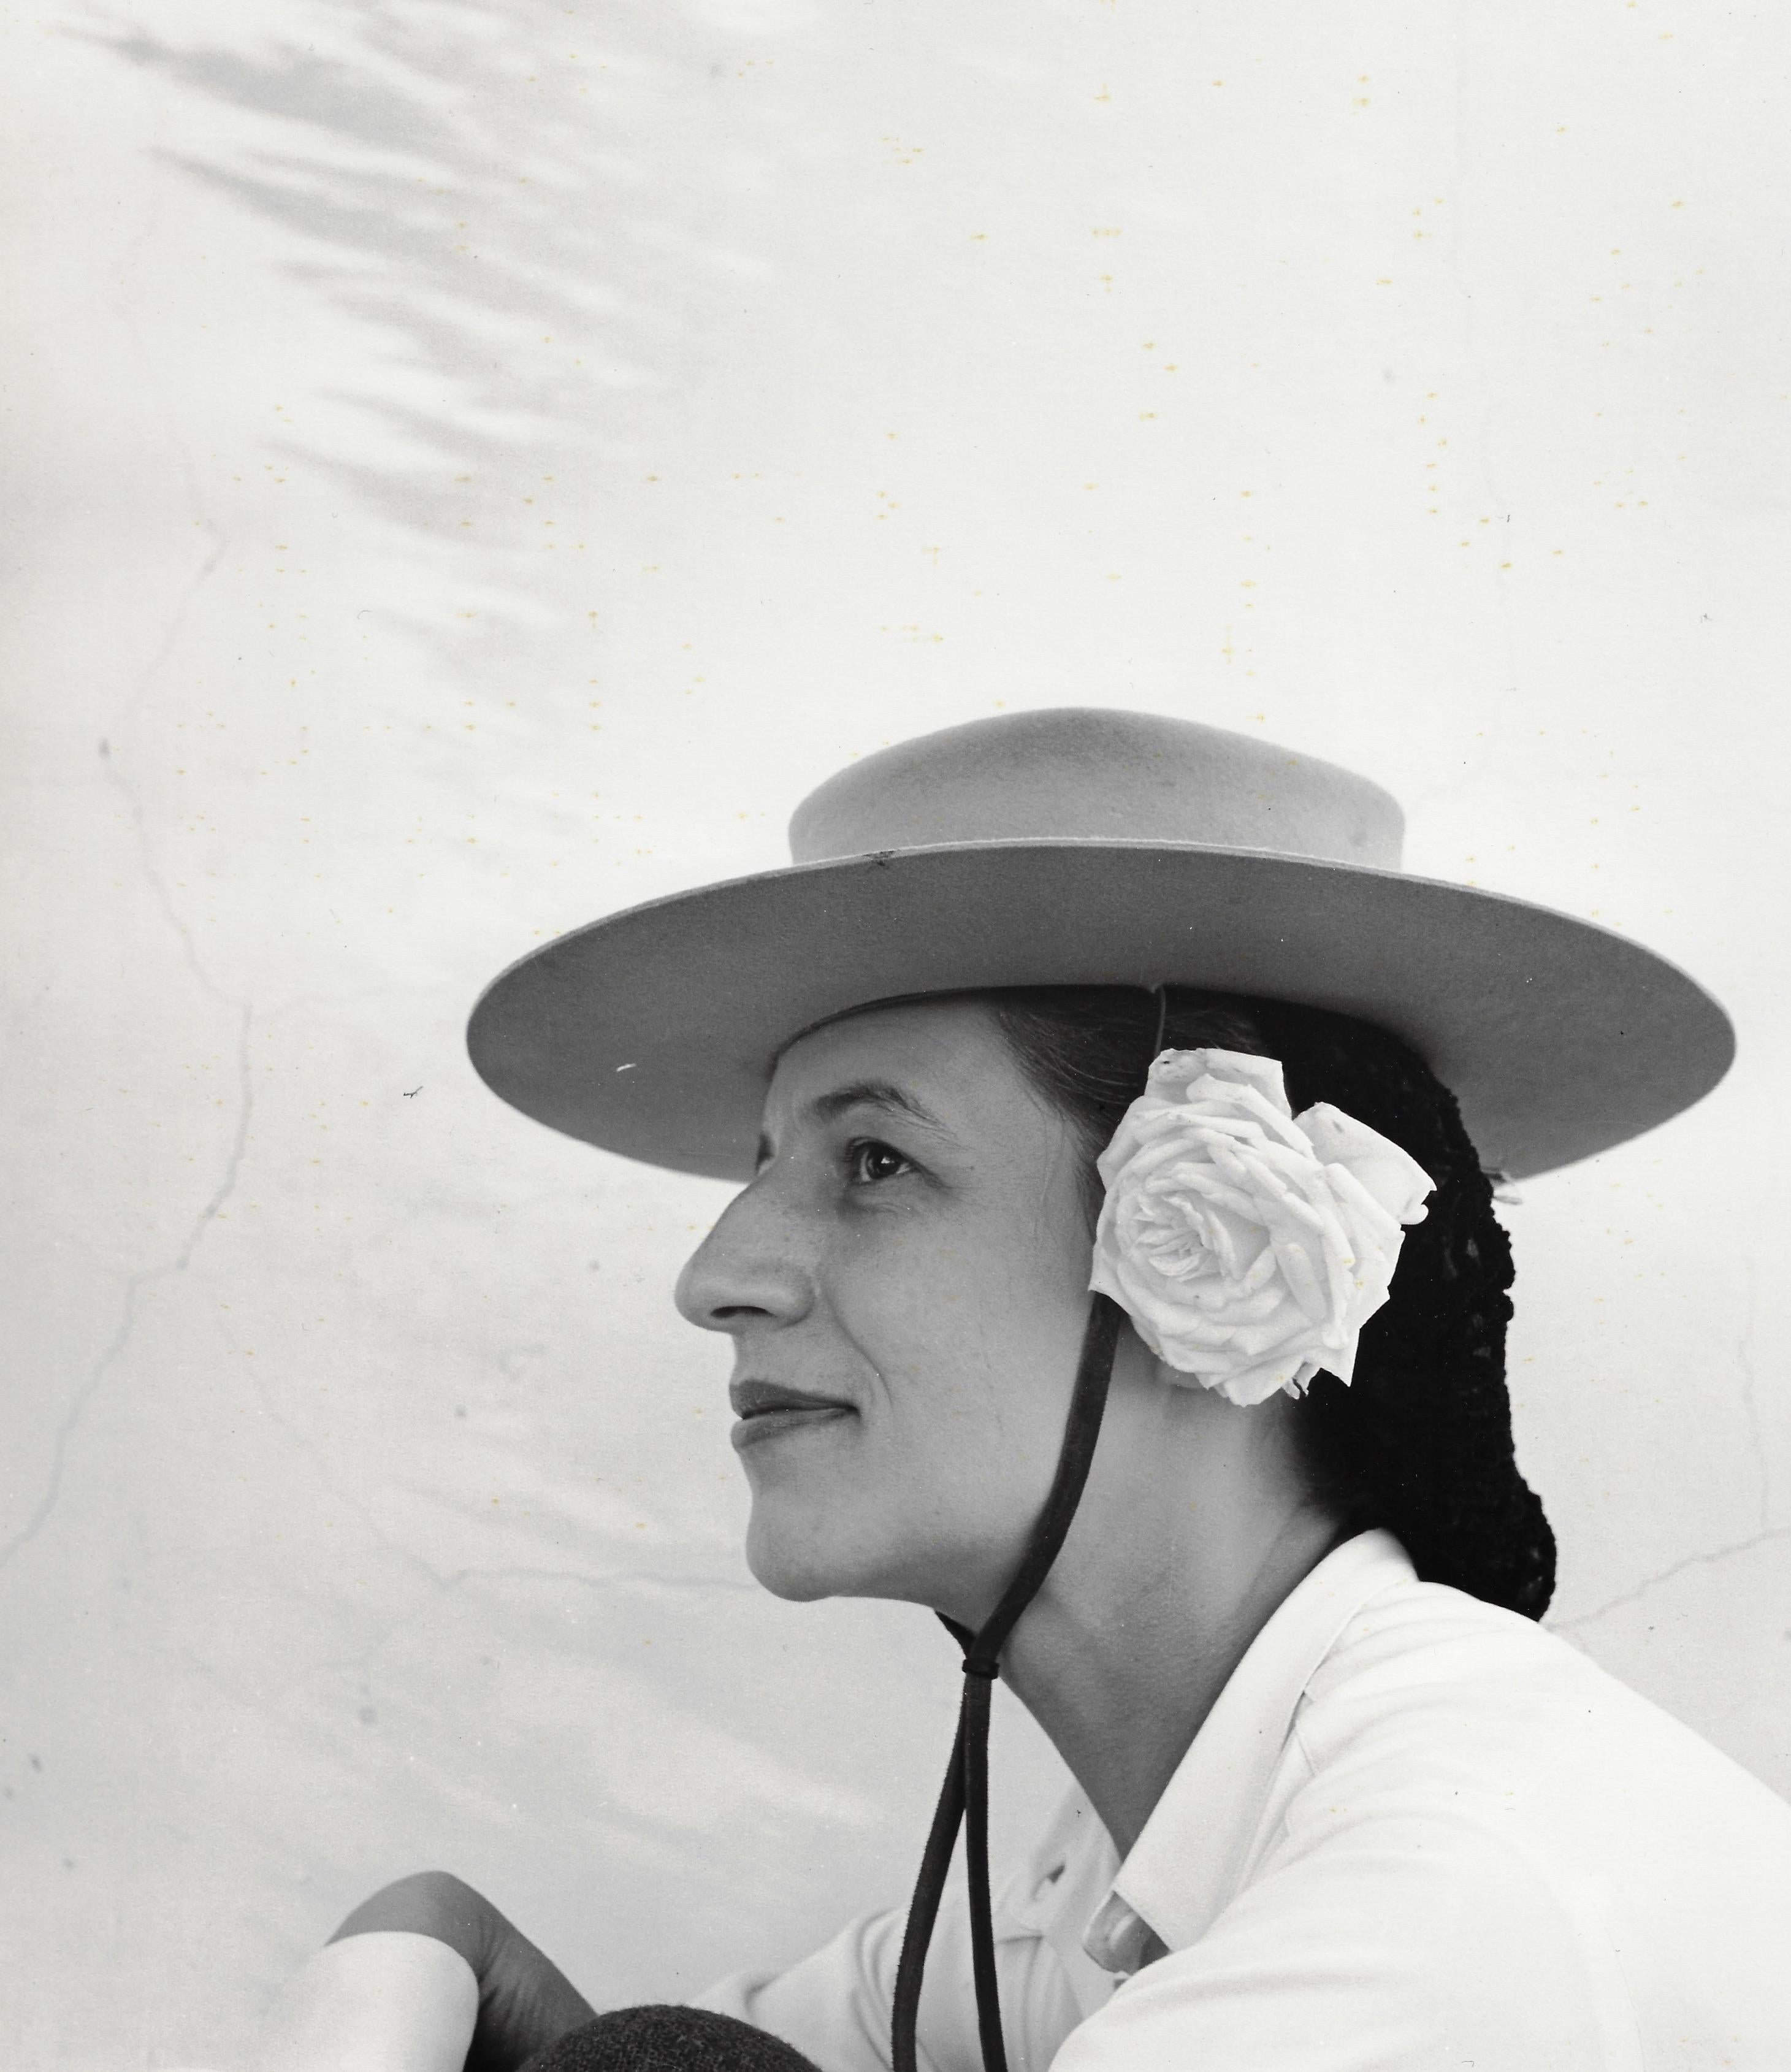 Louise Dahl-Wolfe Black and White Photograph – Diana Vreeland mit Hut und Rose